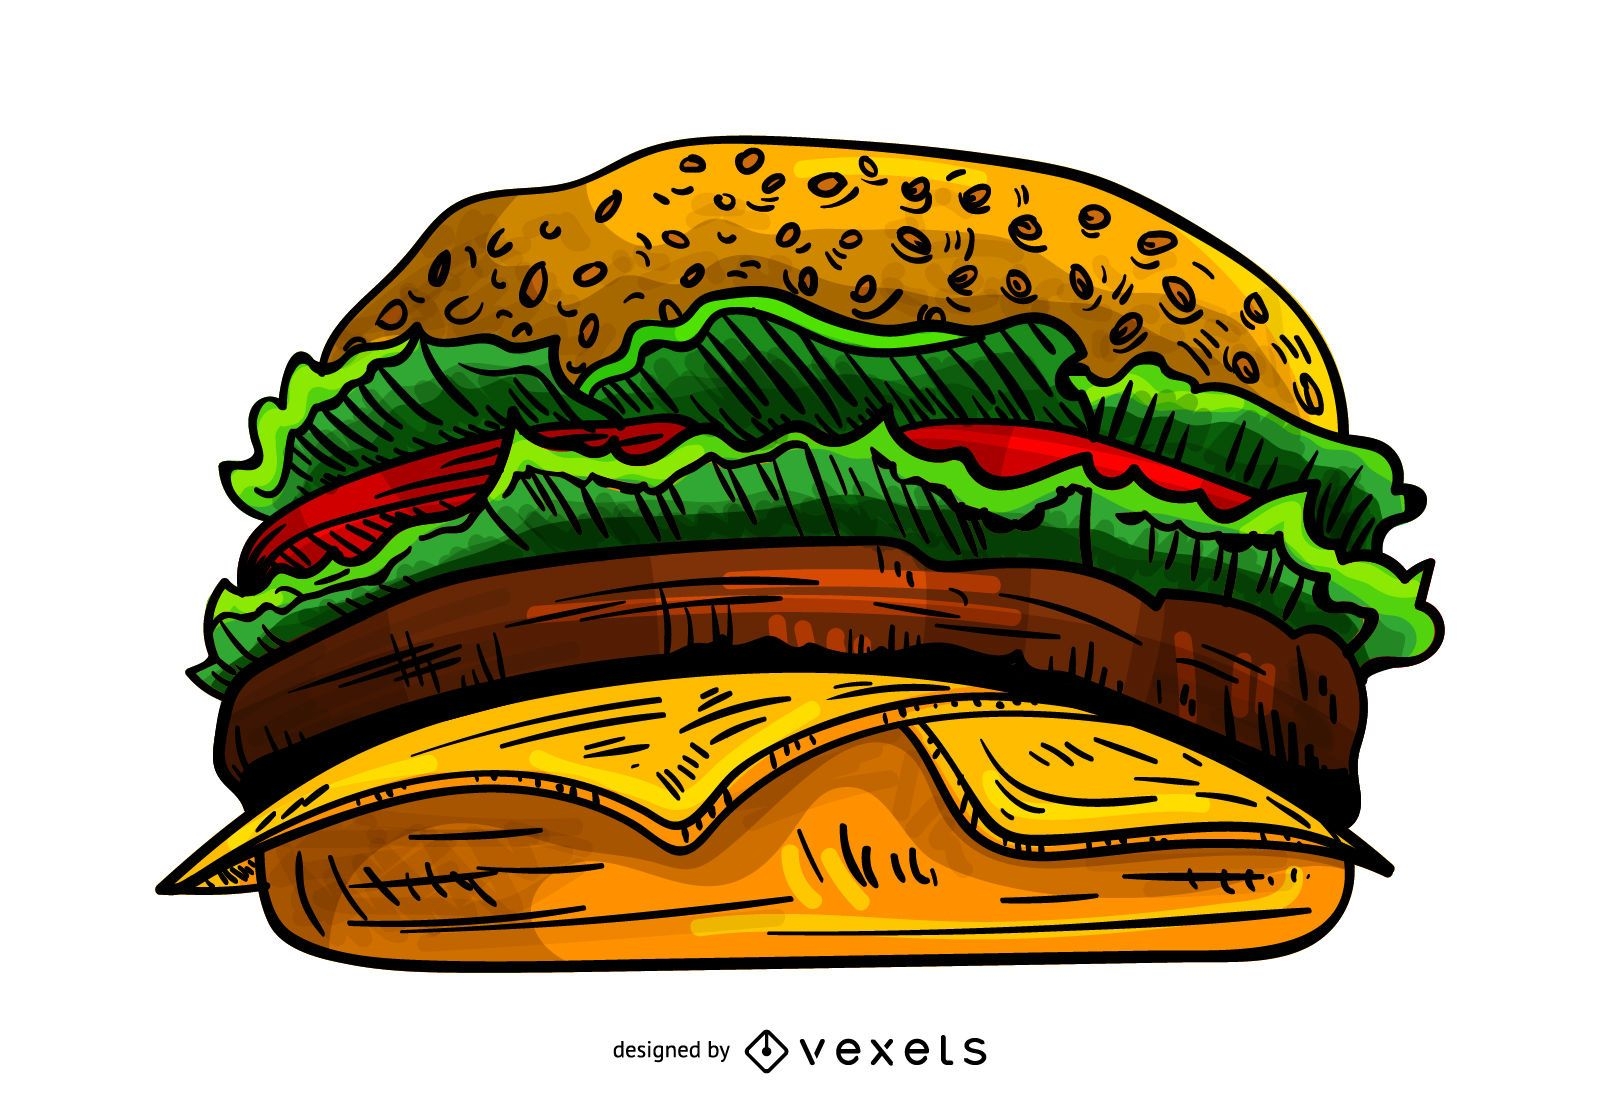 Ilustração de hambúrguer